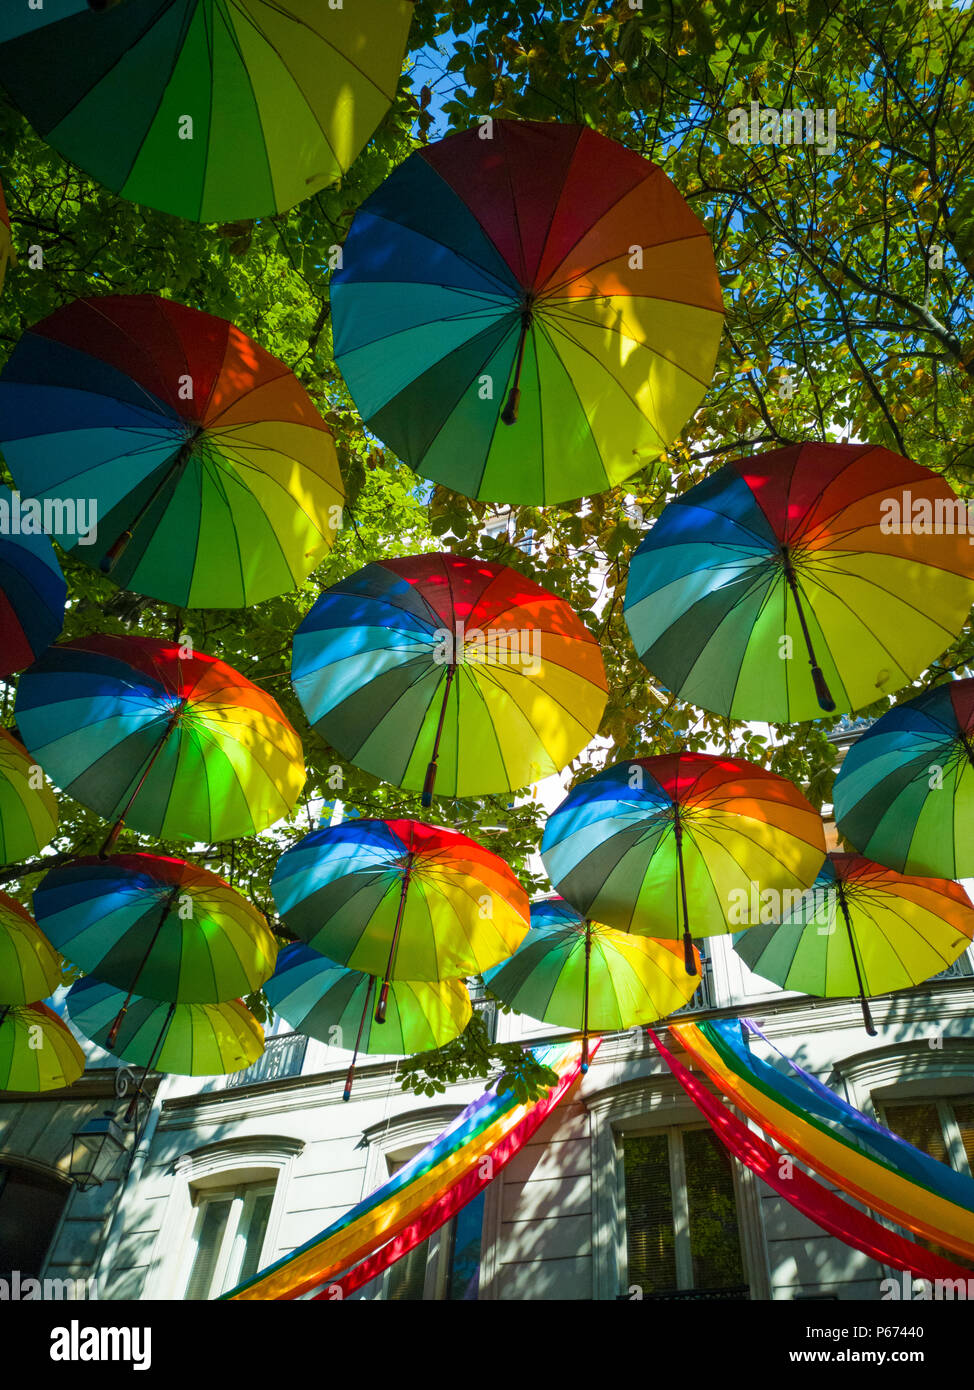 Pour préparer la Gay Pride à Paris, des dizaines de parapluies dans les couleurs de l'arc-en-ciel ont été suspendus. Banque D'Images